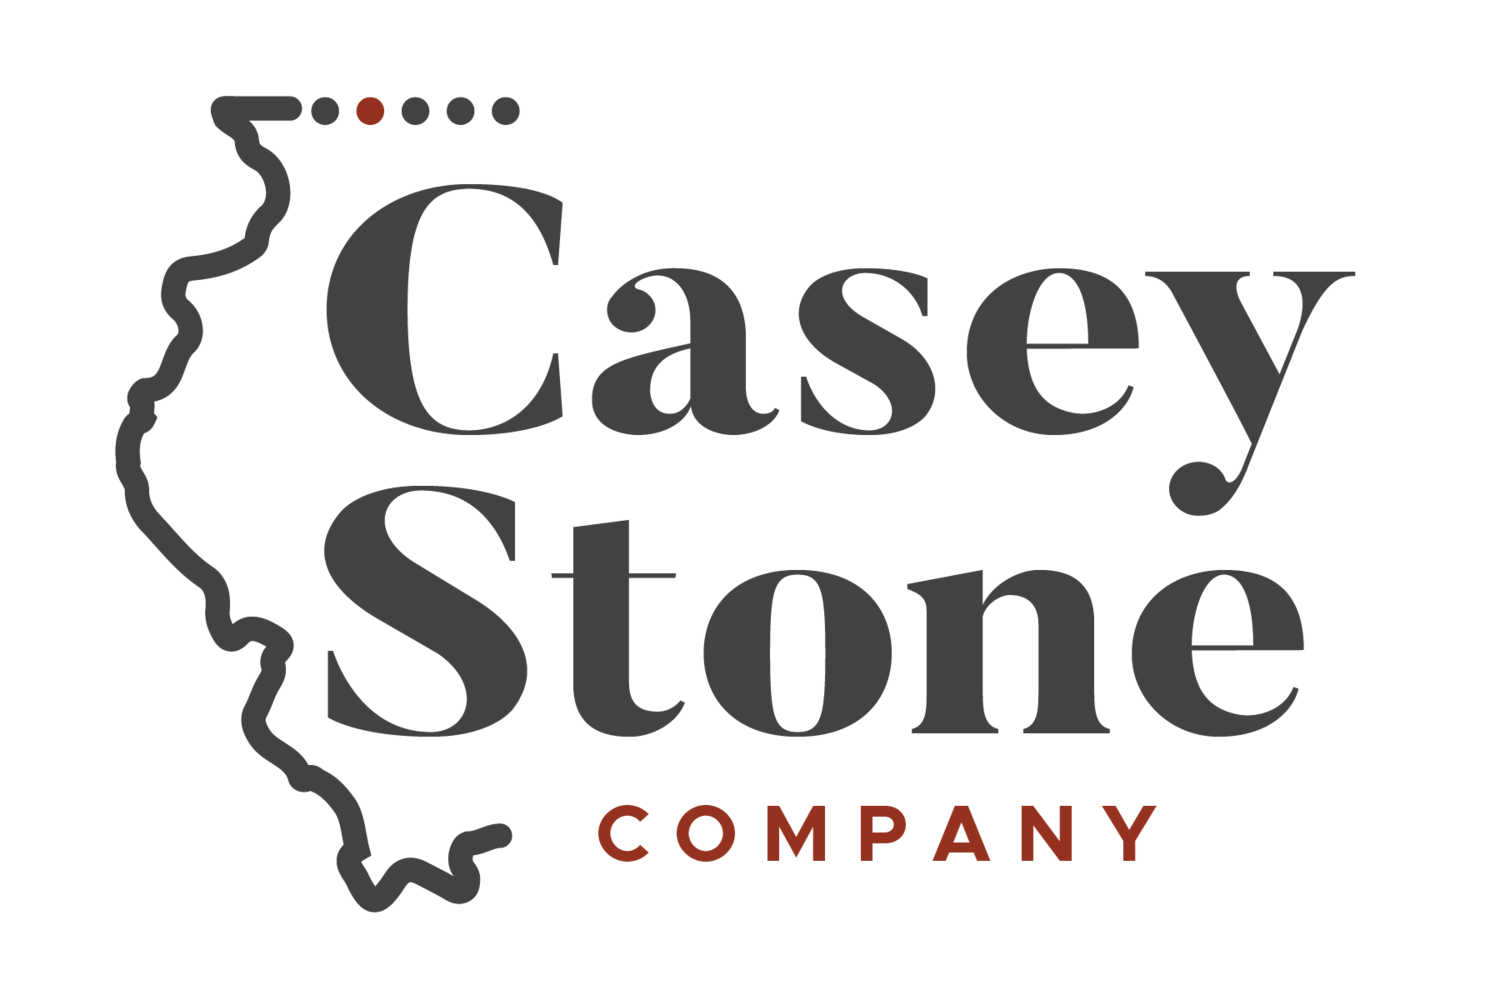 Casey Stone Company